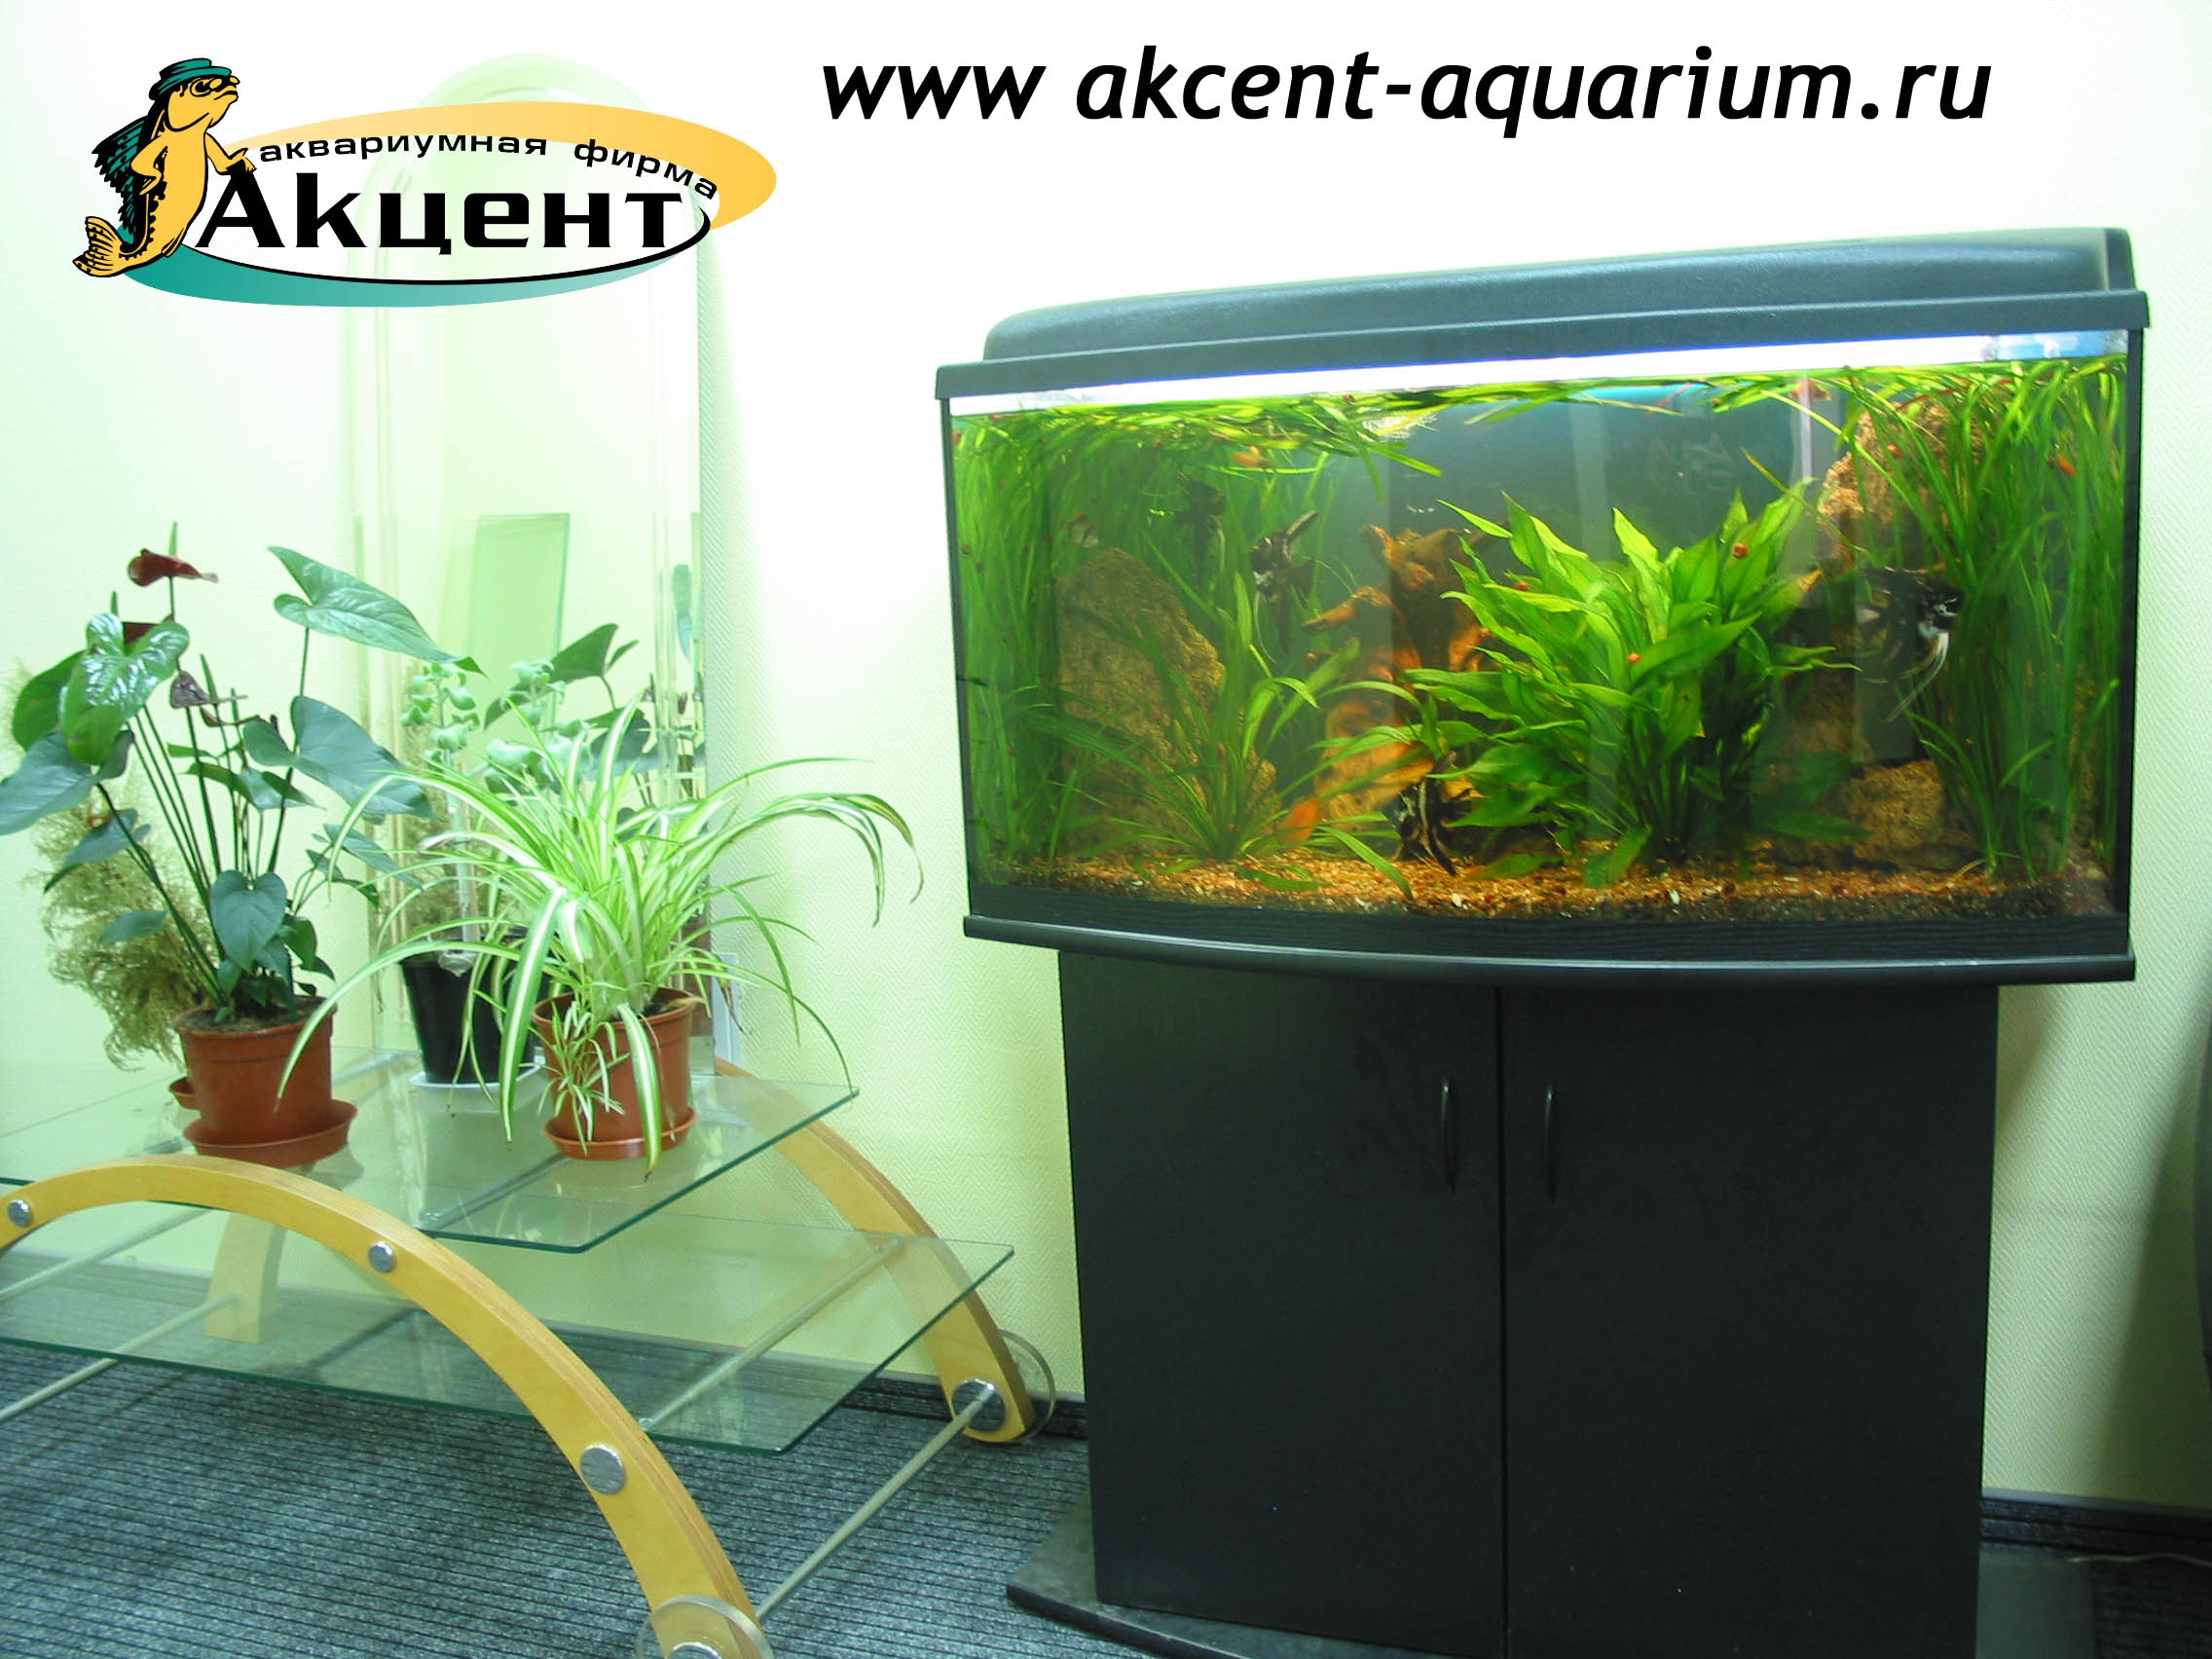 Акцент-аквариум, аквариум 180 литров, с гнутым передним стеклом